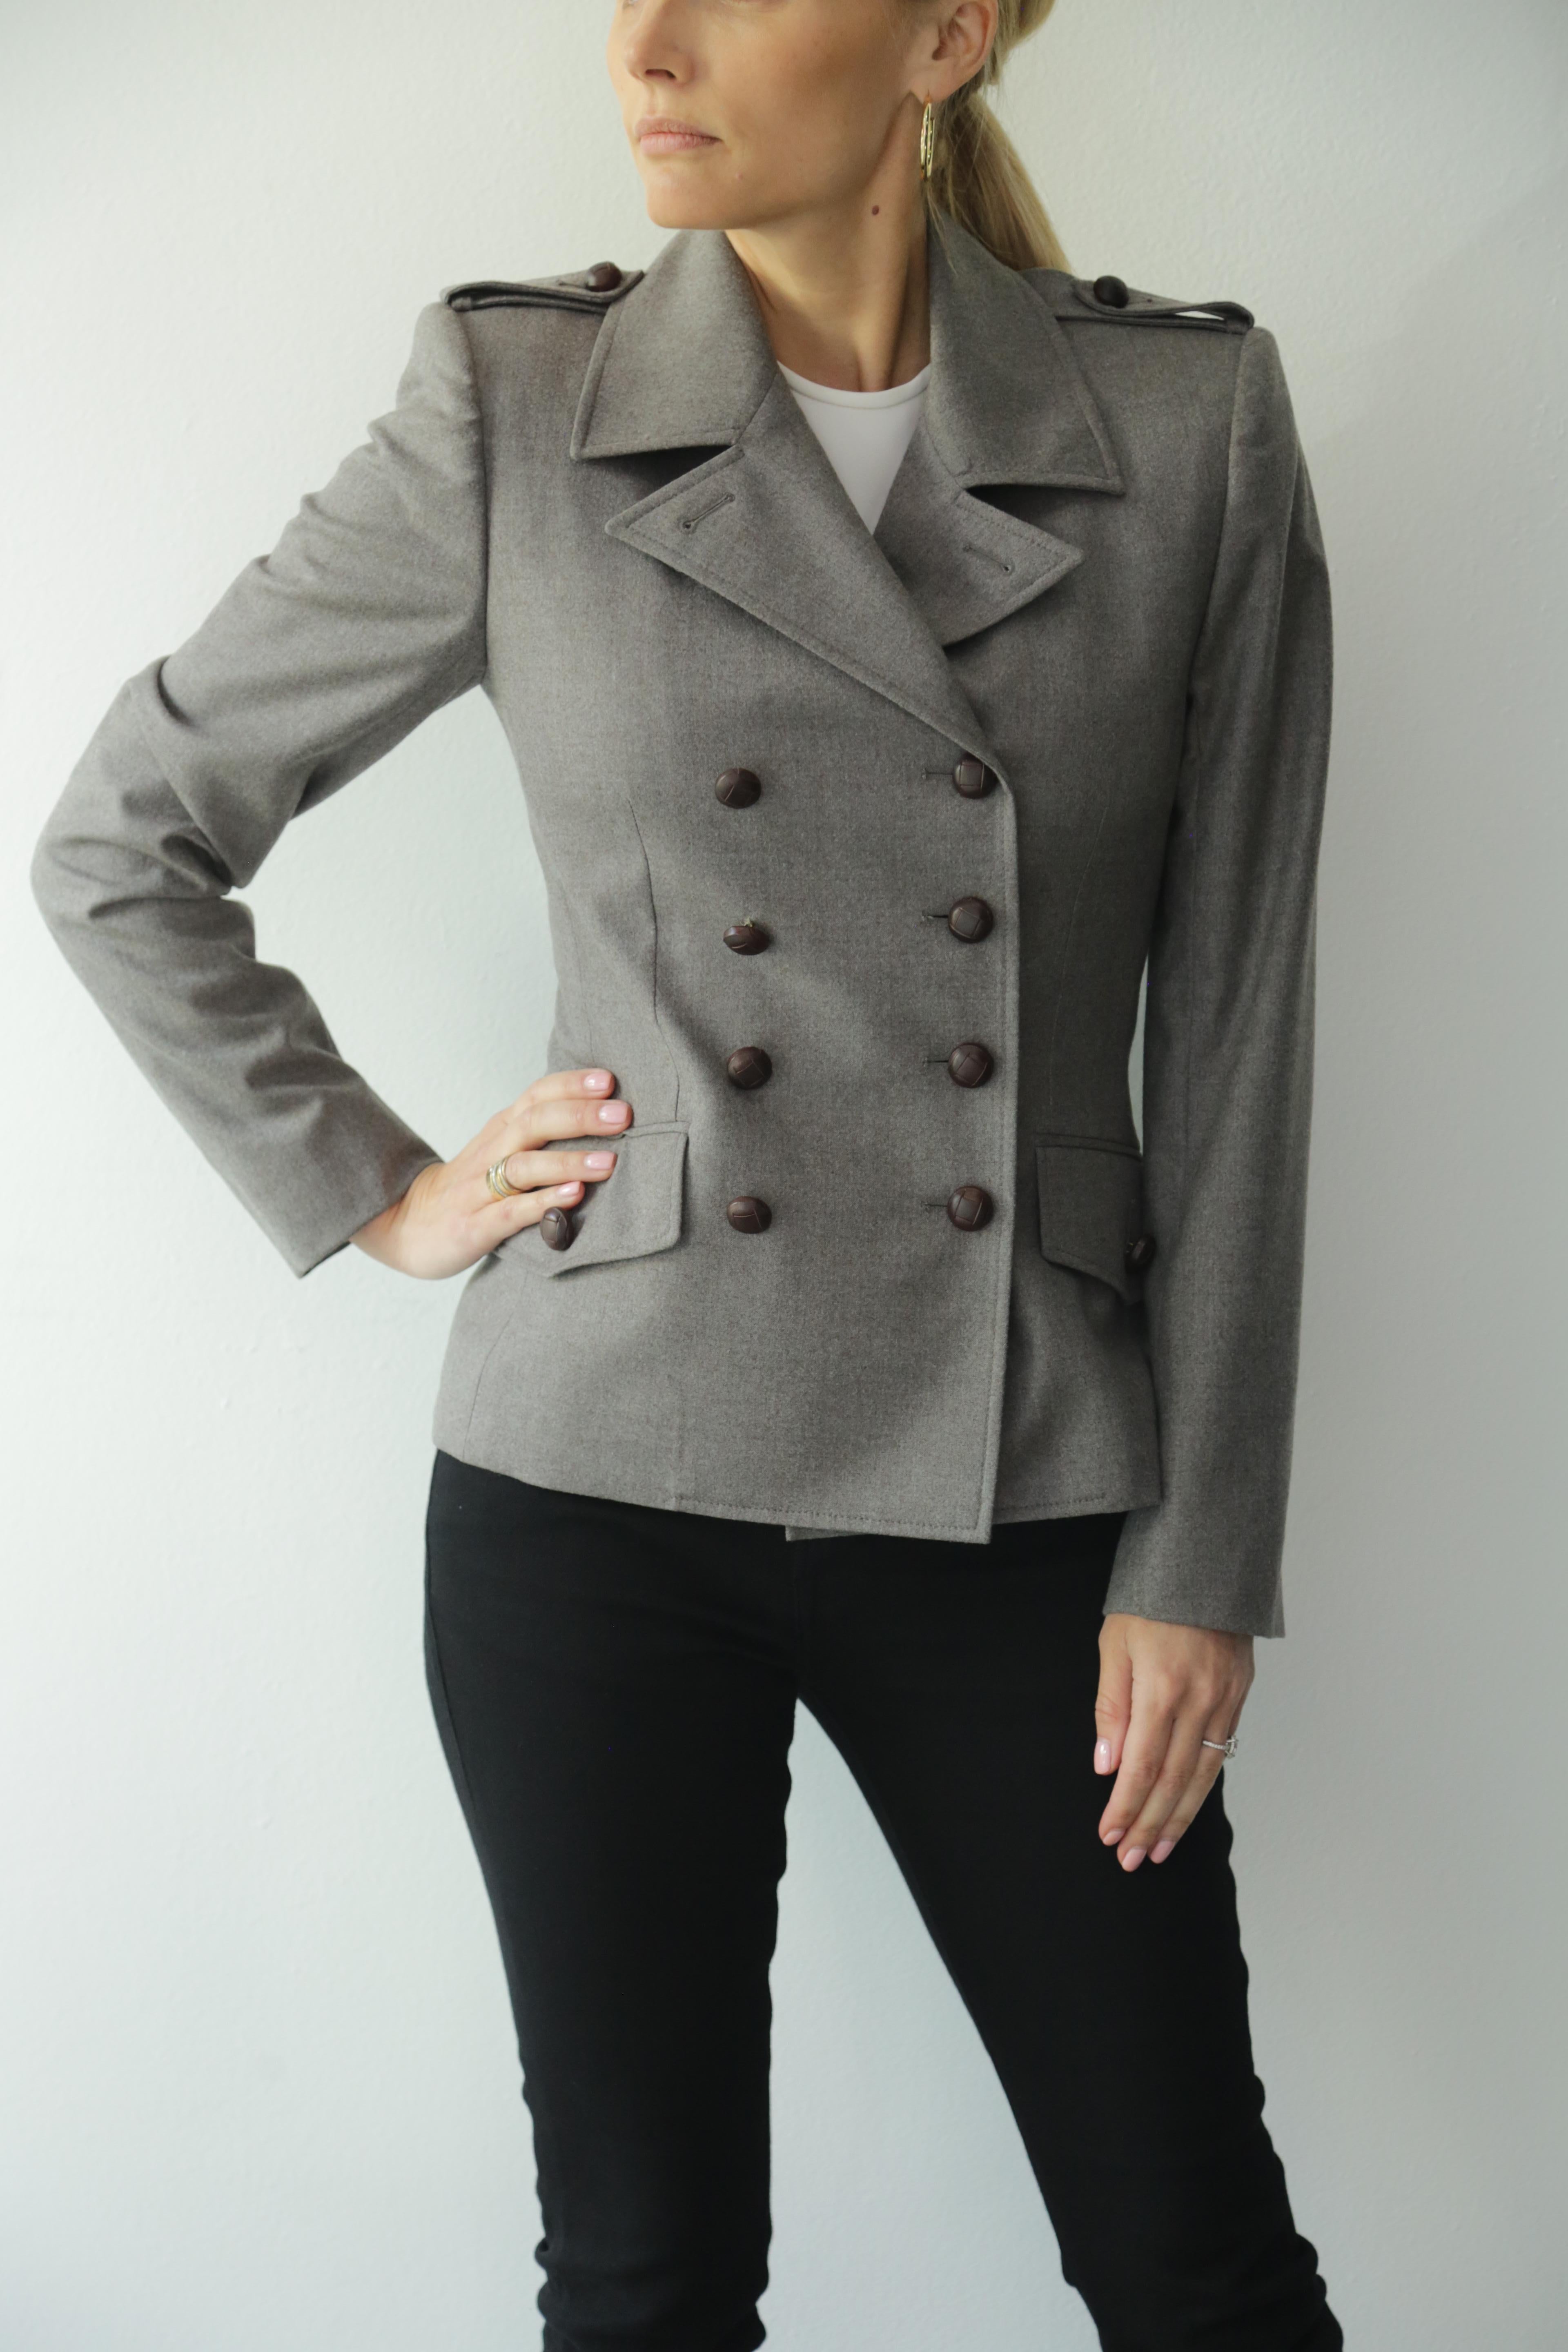 Yves Saint Laurent vintage, veste de blazer grise avec boutons recouverts de cuir marron. Décennie 90s. 
La veste peut être portée avec le col boutonné, ou avec le col ouvert et rabattu comme un blazer.
Excellent état. 
97% laine polaire, 3%